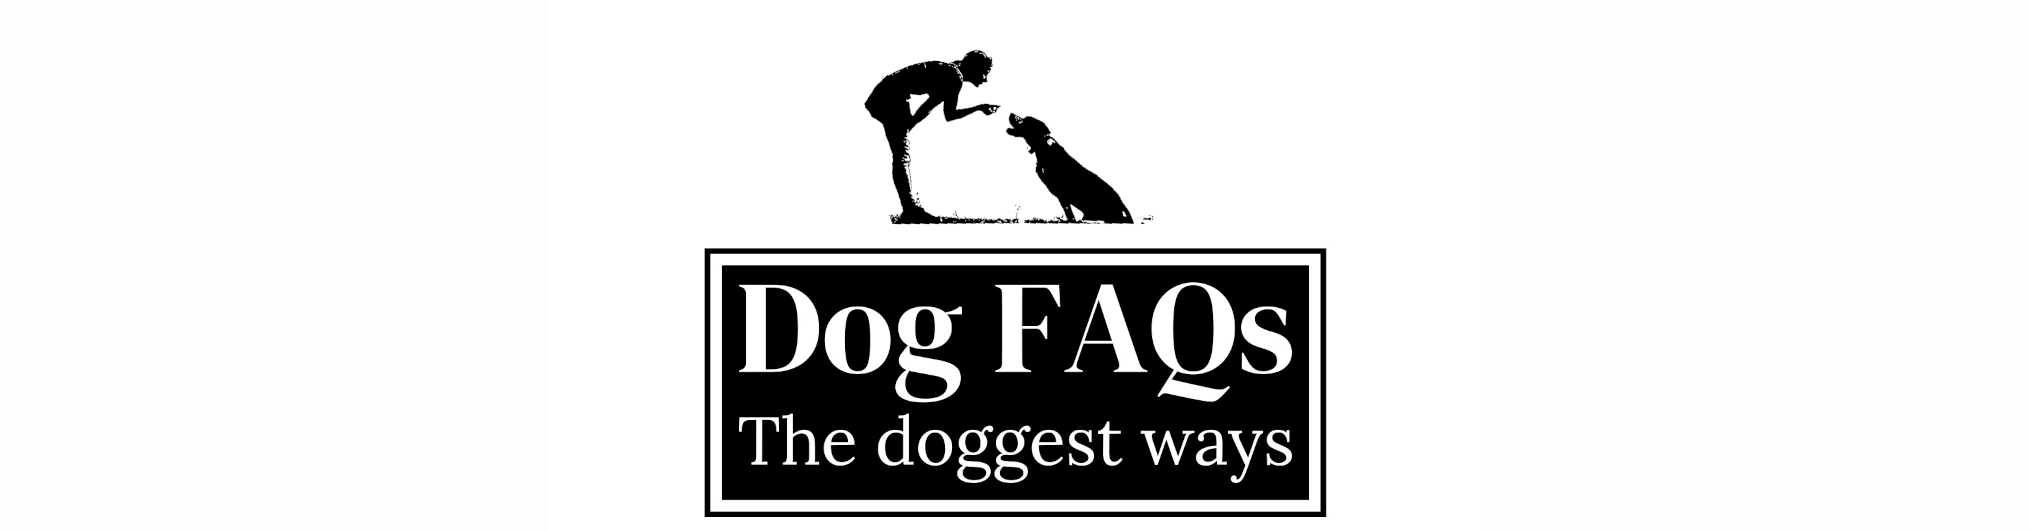 Dog FAQs